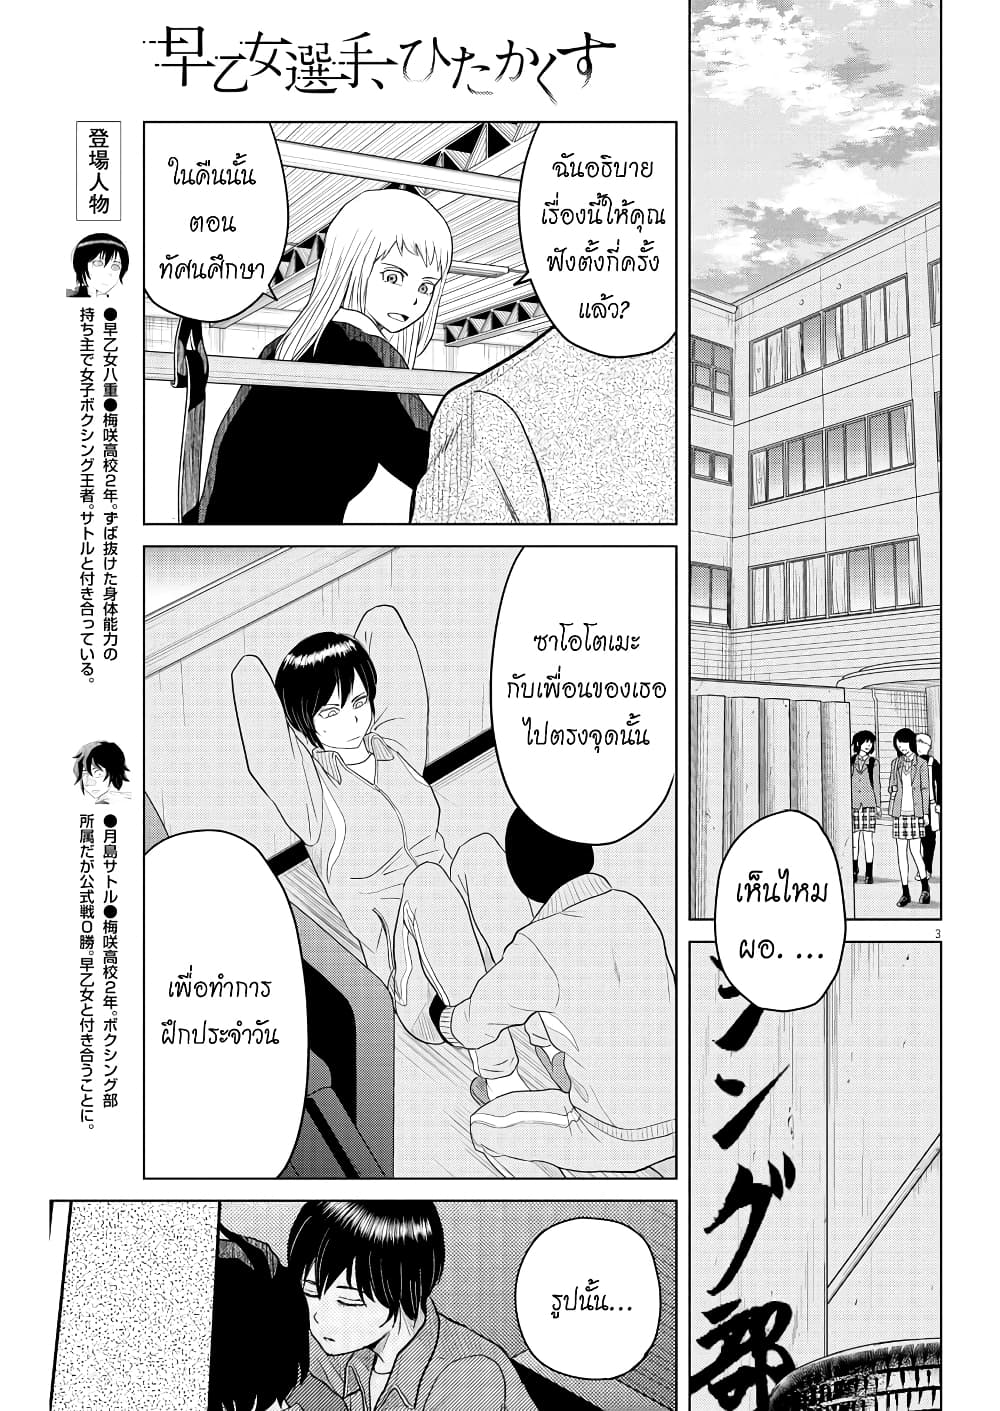 Saotome girl, Hitakakusu 110 (3)